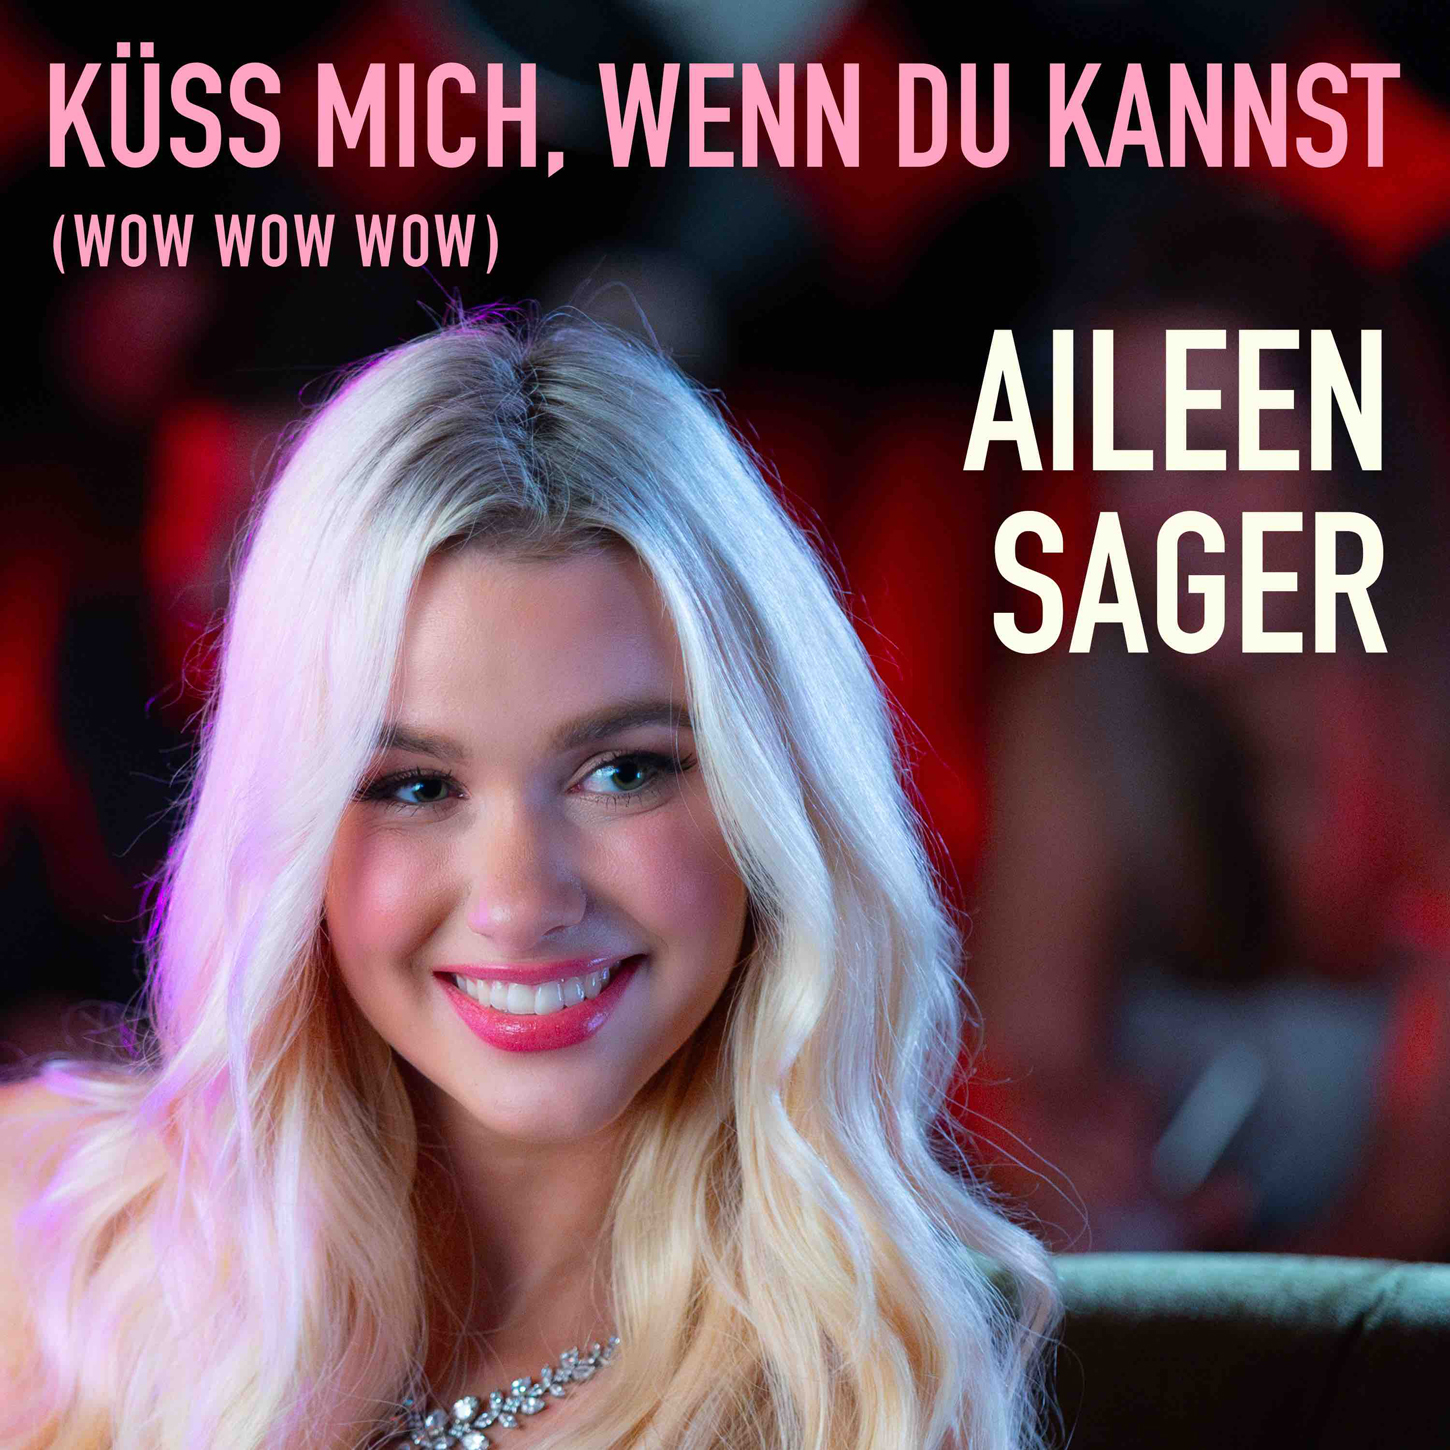 AILEEN SAGER * Küss mich, wenn du kannst (wow wow wow)  (Download-Track)